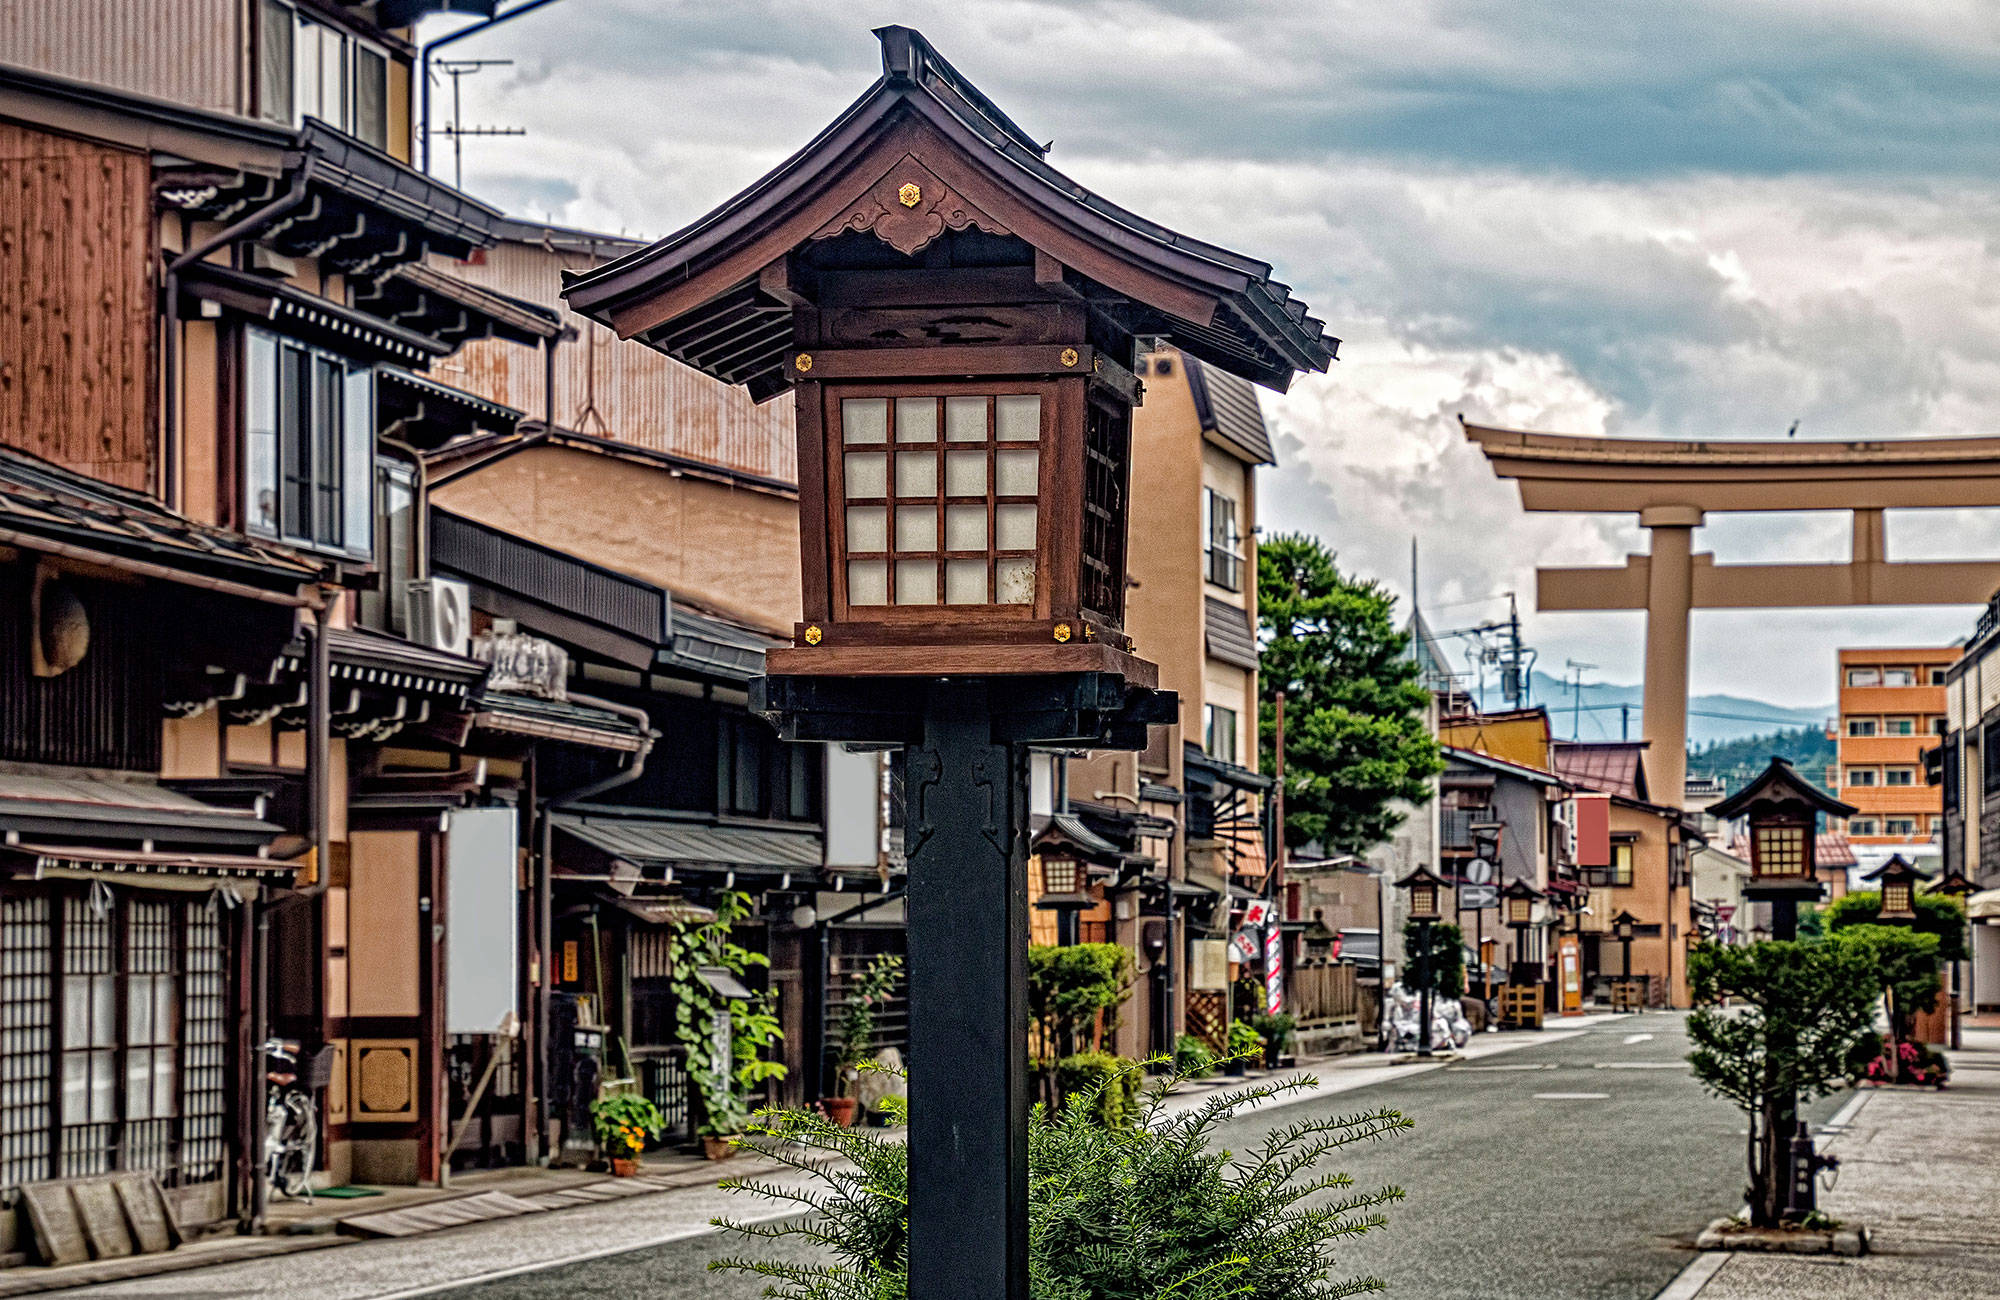 japan-takayama-old-town-main-street-wooden-lantern-box